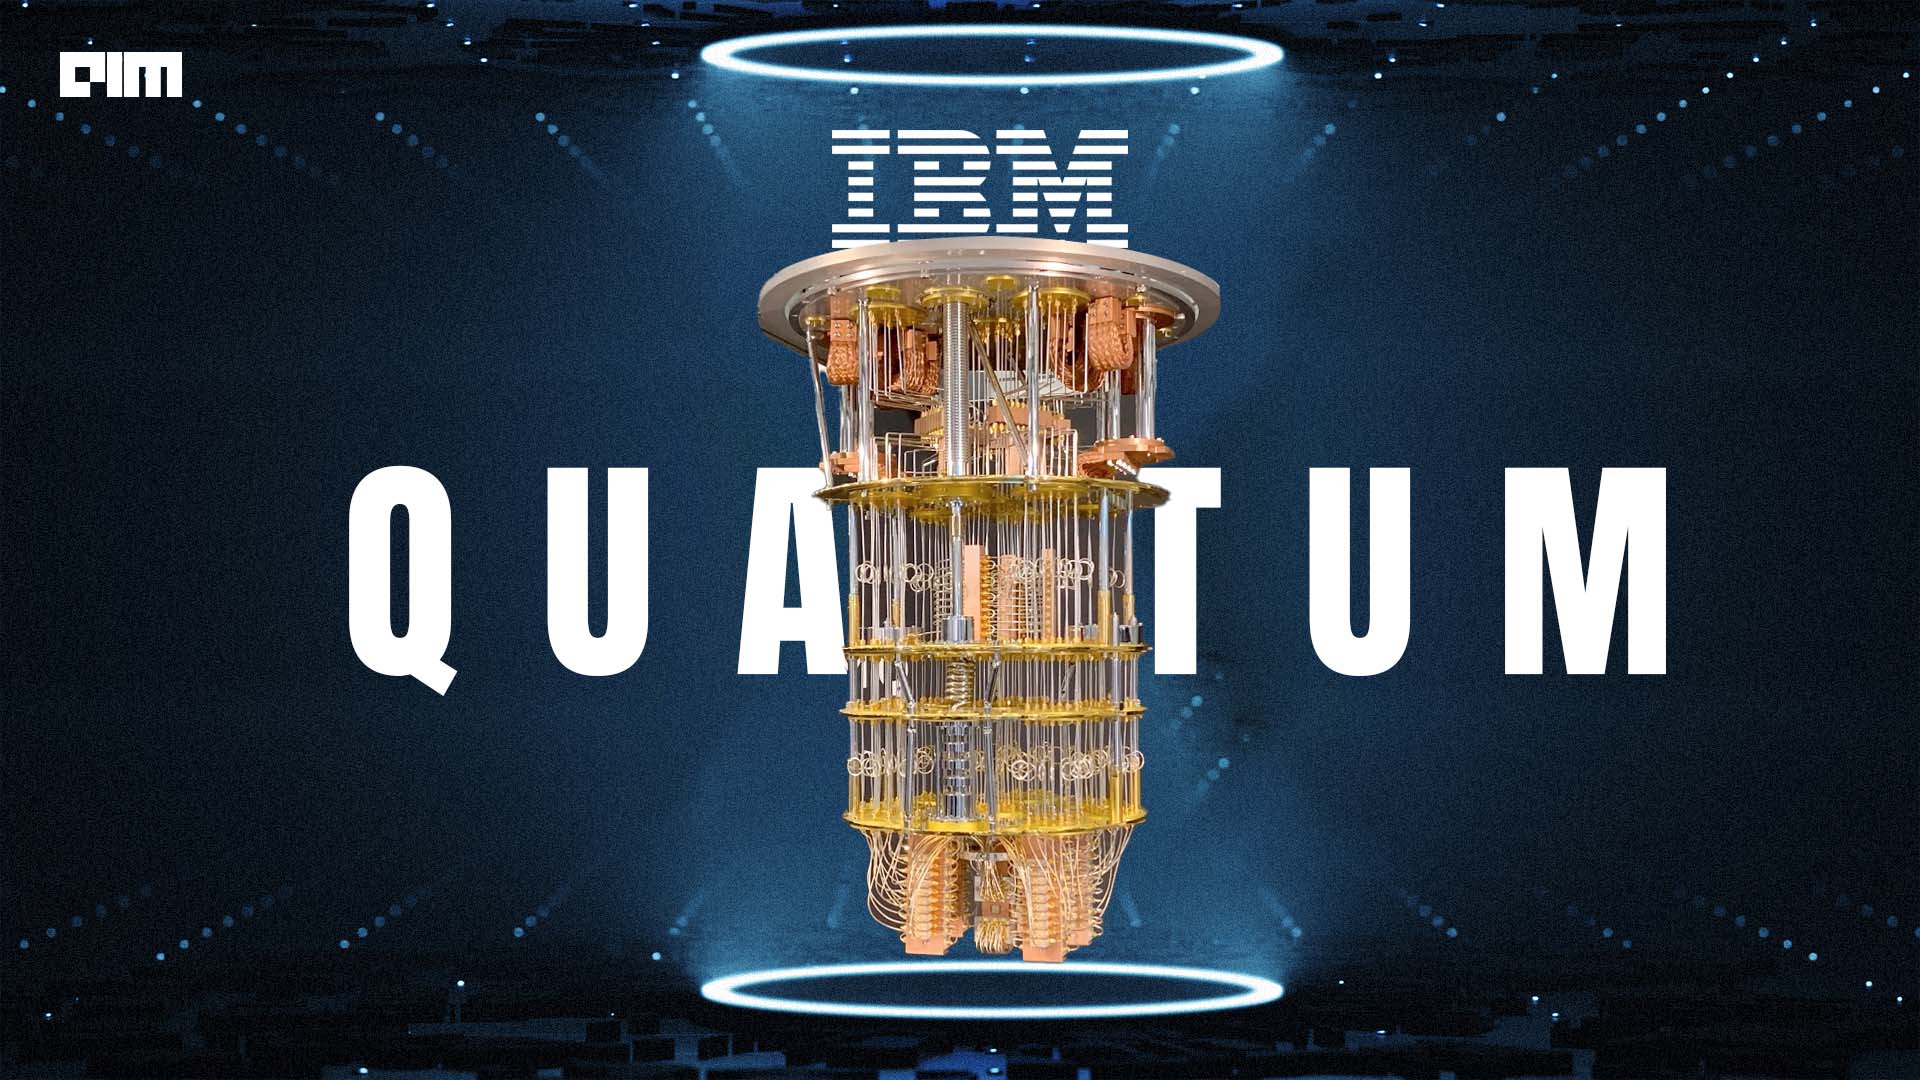 IBM Brings an Optimistic Future for Quantum Computing